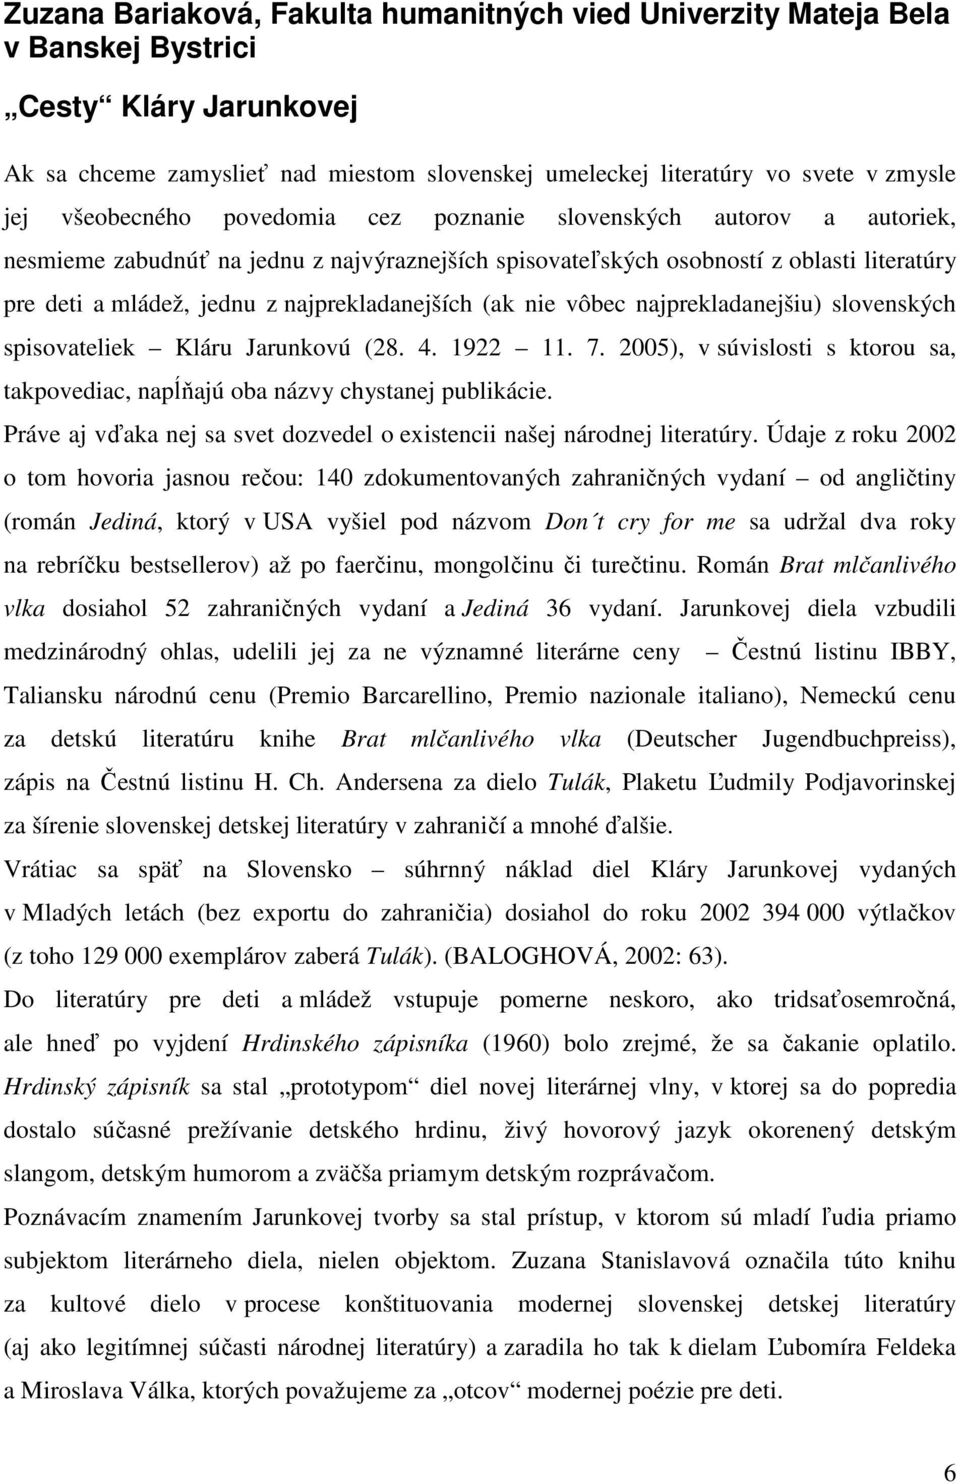 najprekladanejších (ak nie vôbec najprekladanejšiu) slovenských spisovateliek Kláru Jarunkovú (28. 4. 1922 11. 7. 2005), v súvislosti s ktorou sa, takpovediac, napĺňajú oba názvy chystanej publikácie.